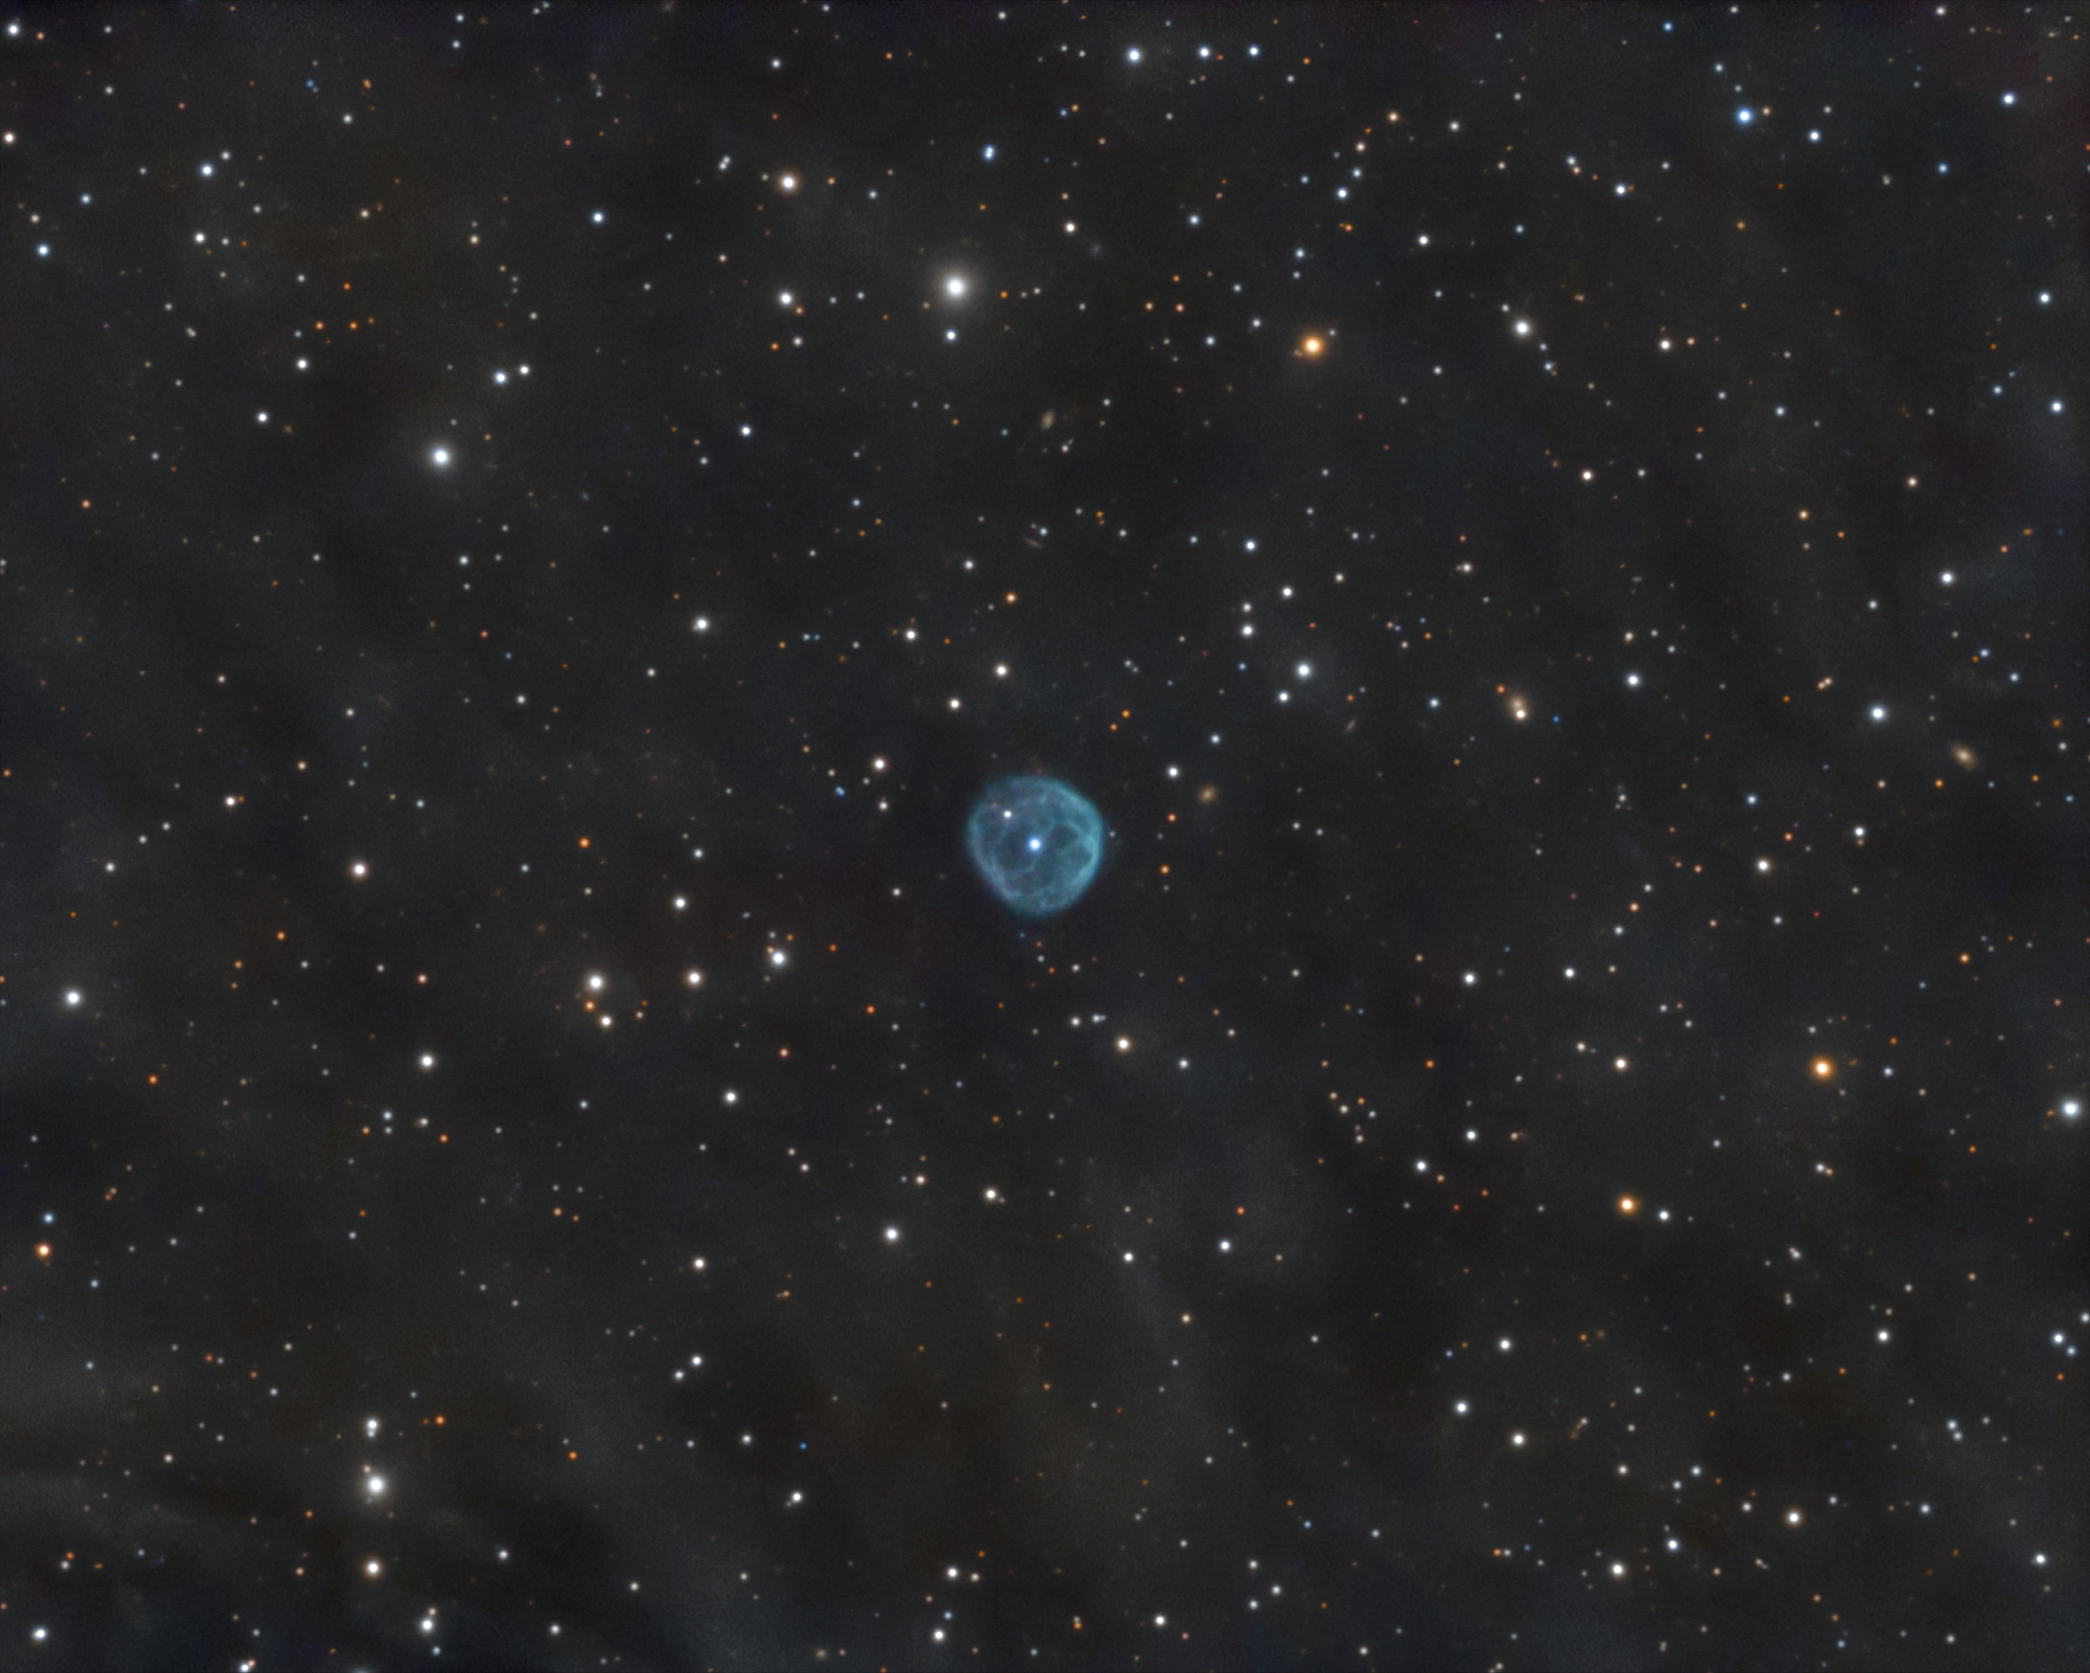   NGC 7094   